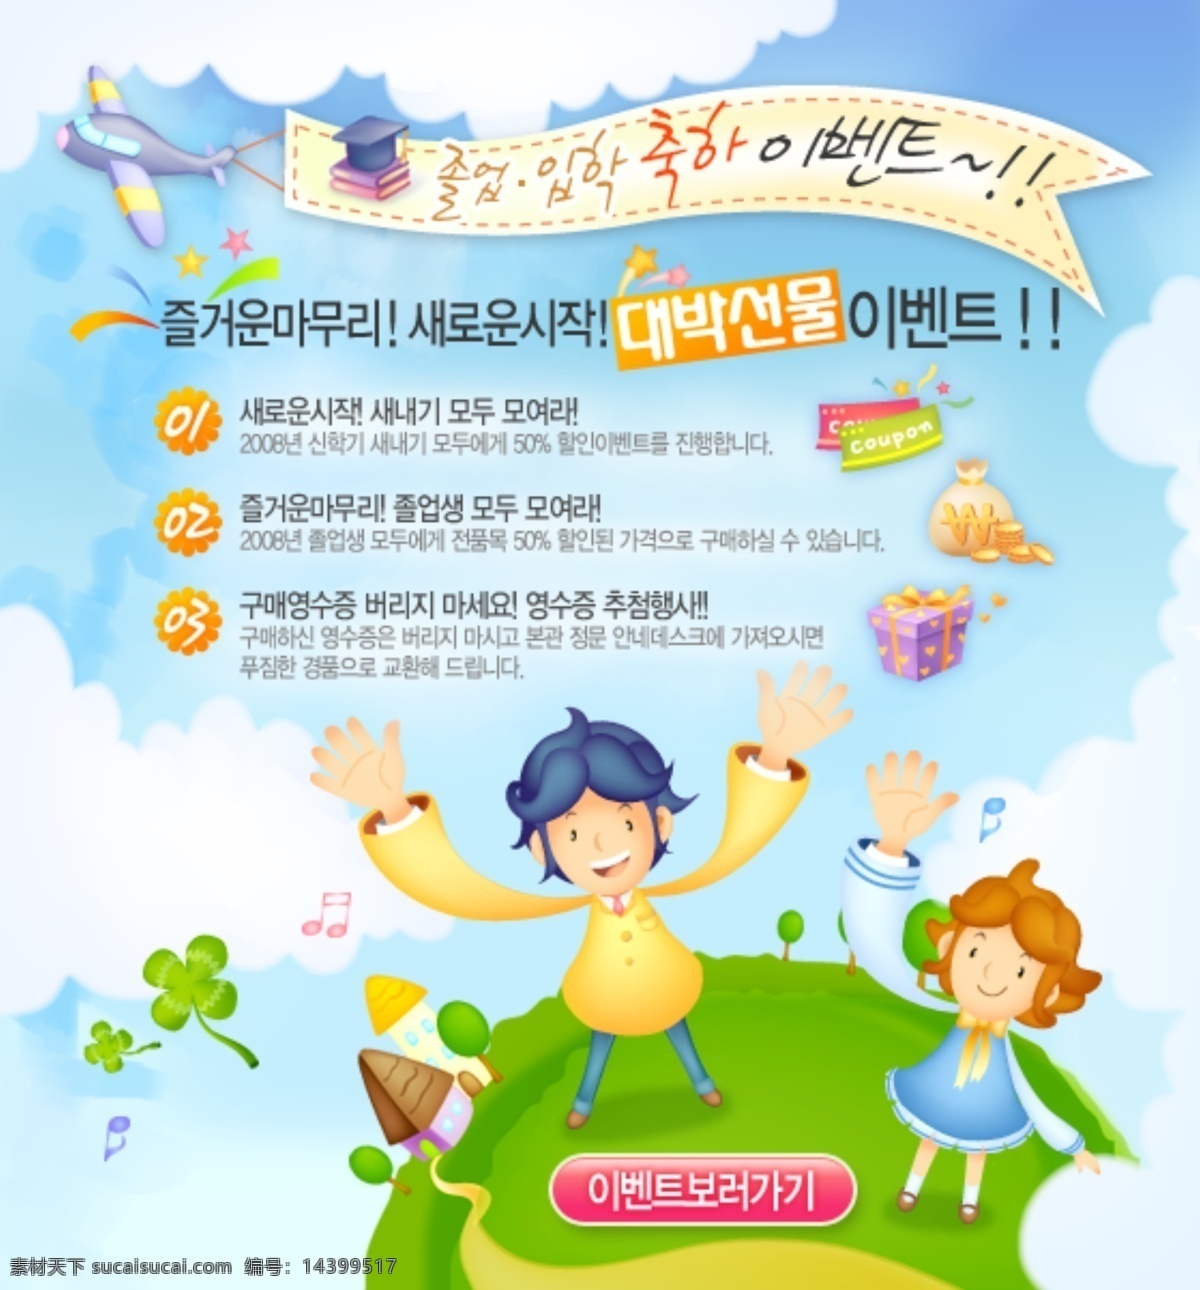 网站模版 卡通可爱素材 卡通飞机 横幅 韩文字体 礼物 金币 可爱男孩女孩 四叶草 蓝天白云背景 web 界面设计 韩文模板